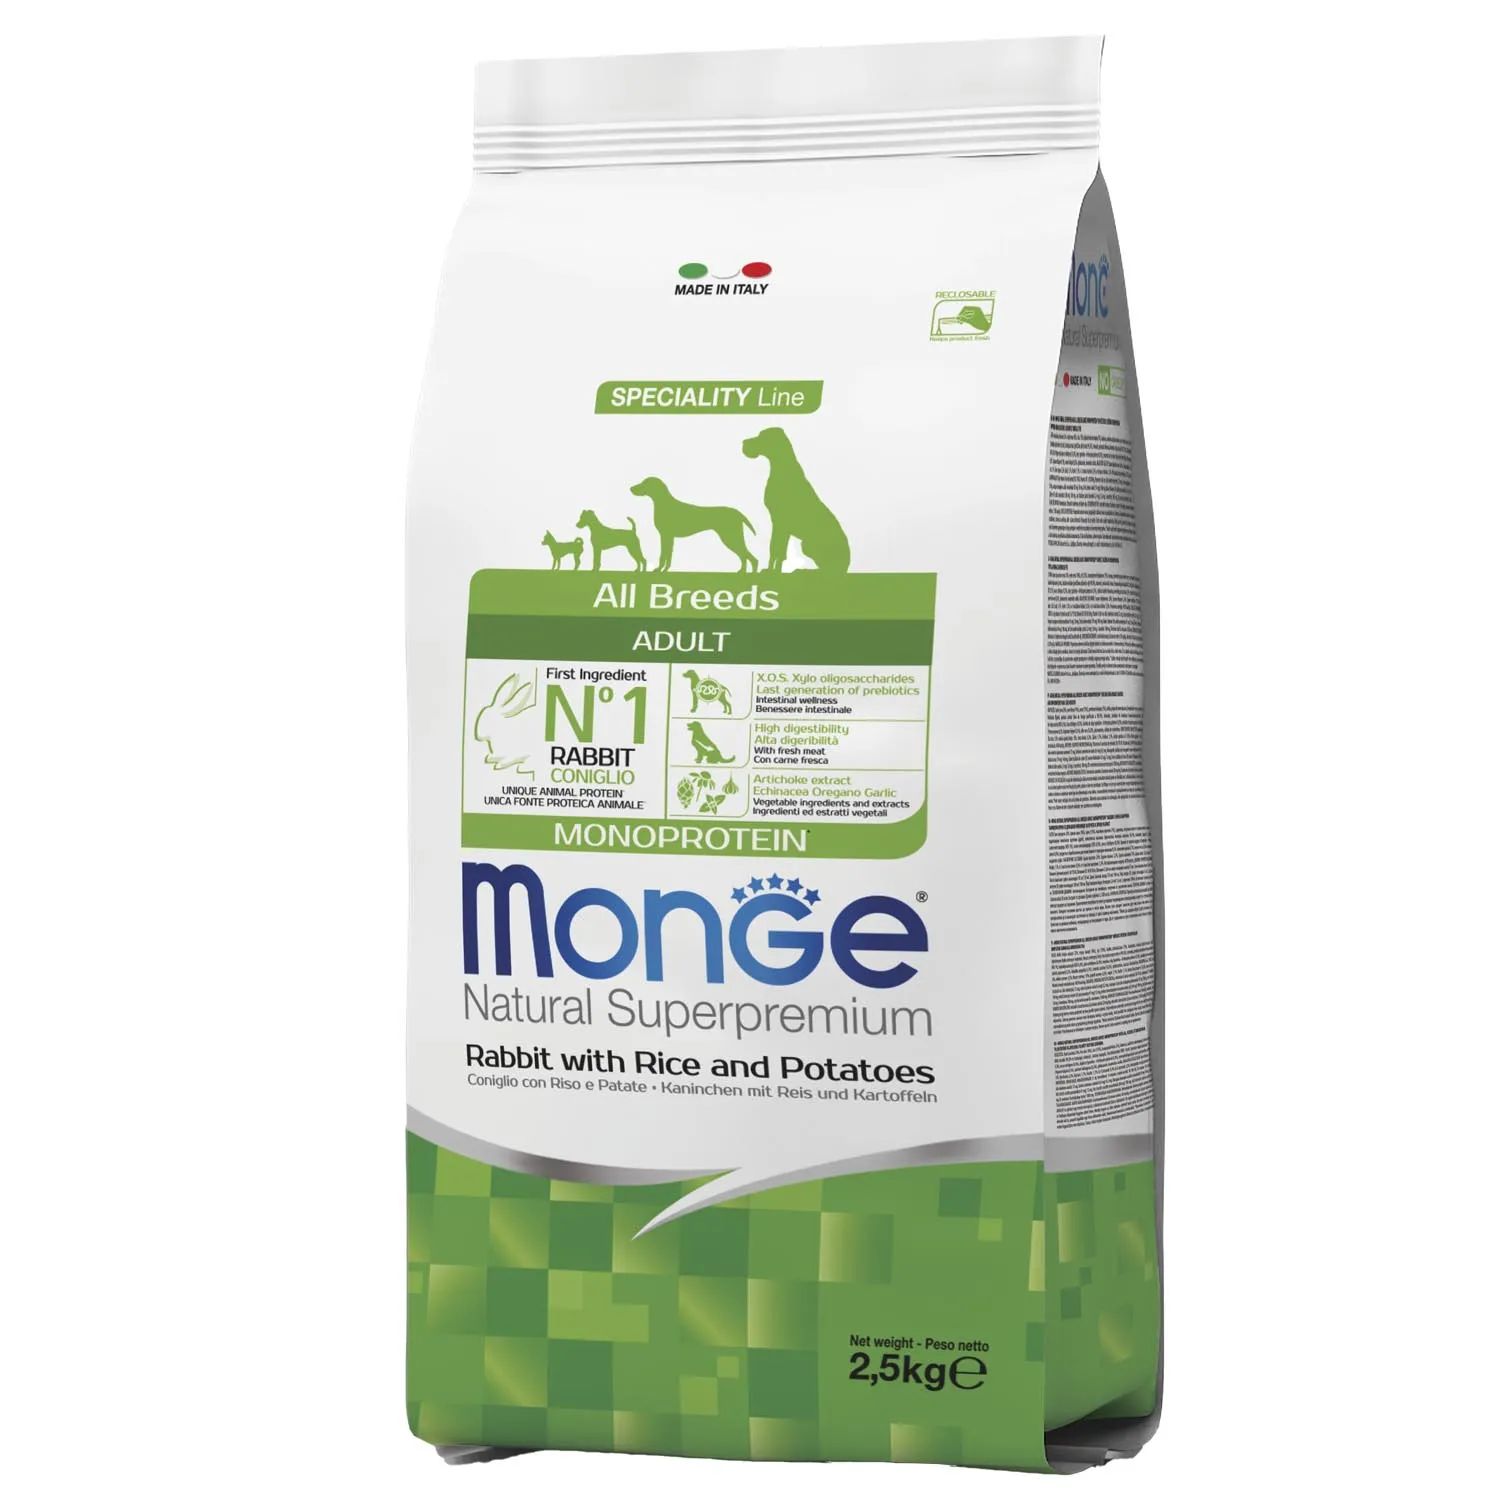 Monge Dog Maxi корм для щенков крупных пород 12 кг. Monge all Breed Adult сухой корм с кроликом, рисом и картофелем для собак, 12 кг. Корм Monge natural Superpremium Adult. Корм Monge Dog 2,5 кг Speciality Monoprotein Puppy/Junior говядина/рис / 70011372. Корм для собак monge speciality